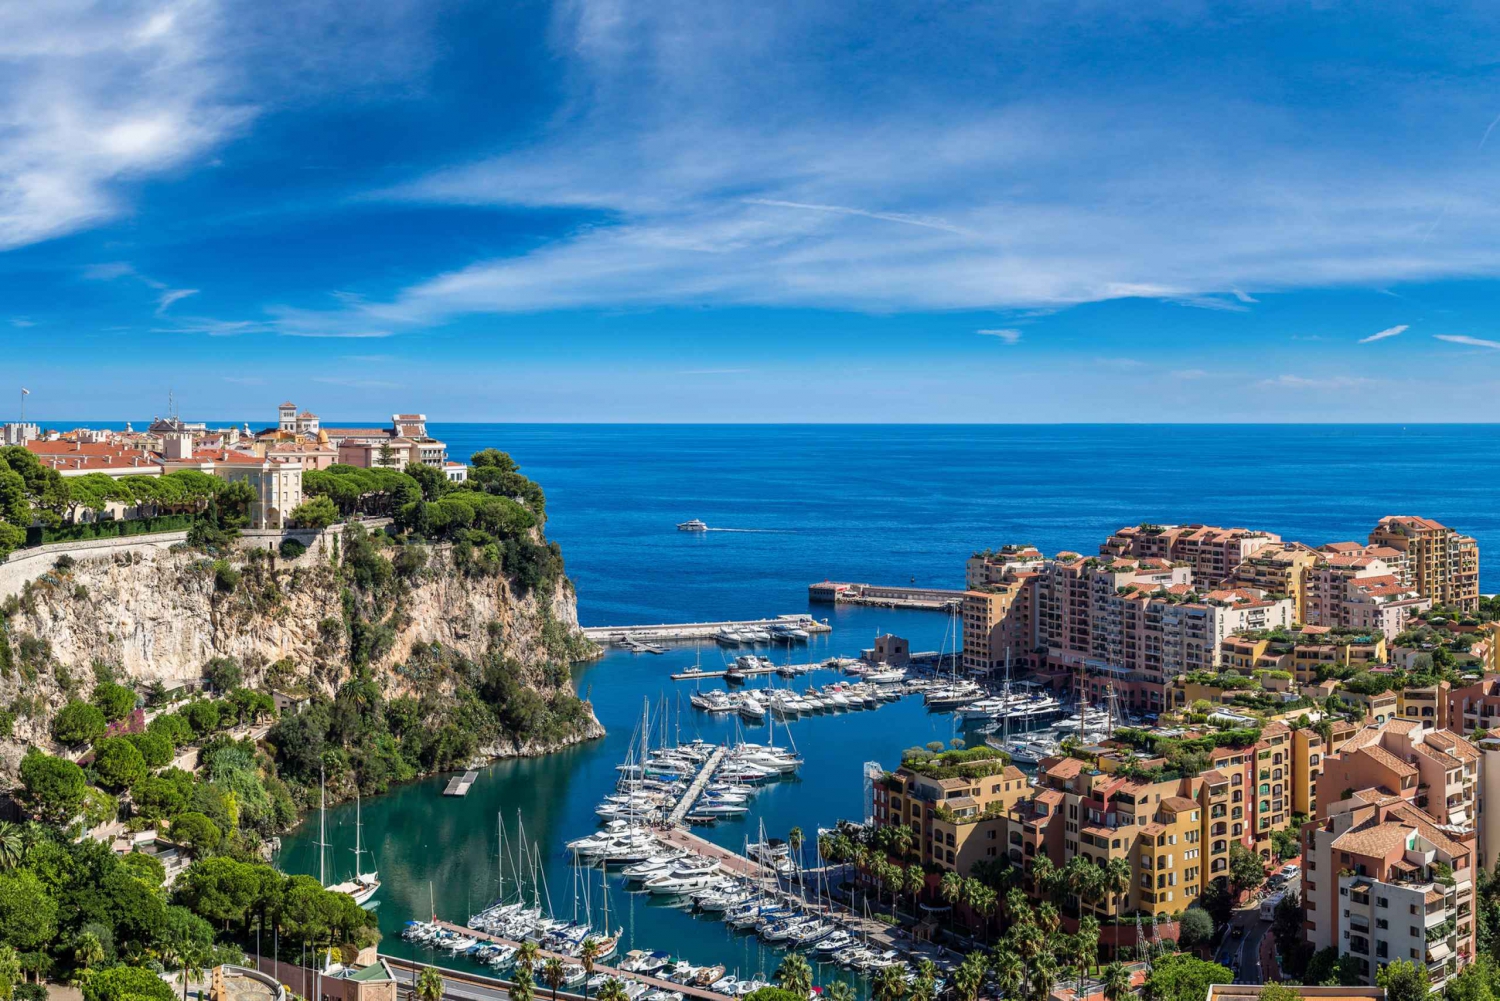 Monaco, Monte-Carlo & Eze Half-Day Small Group Tour